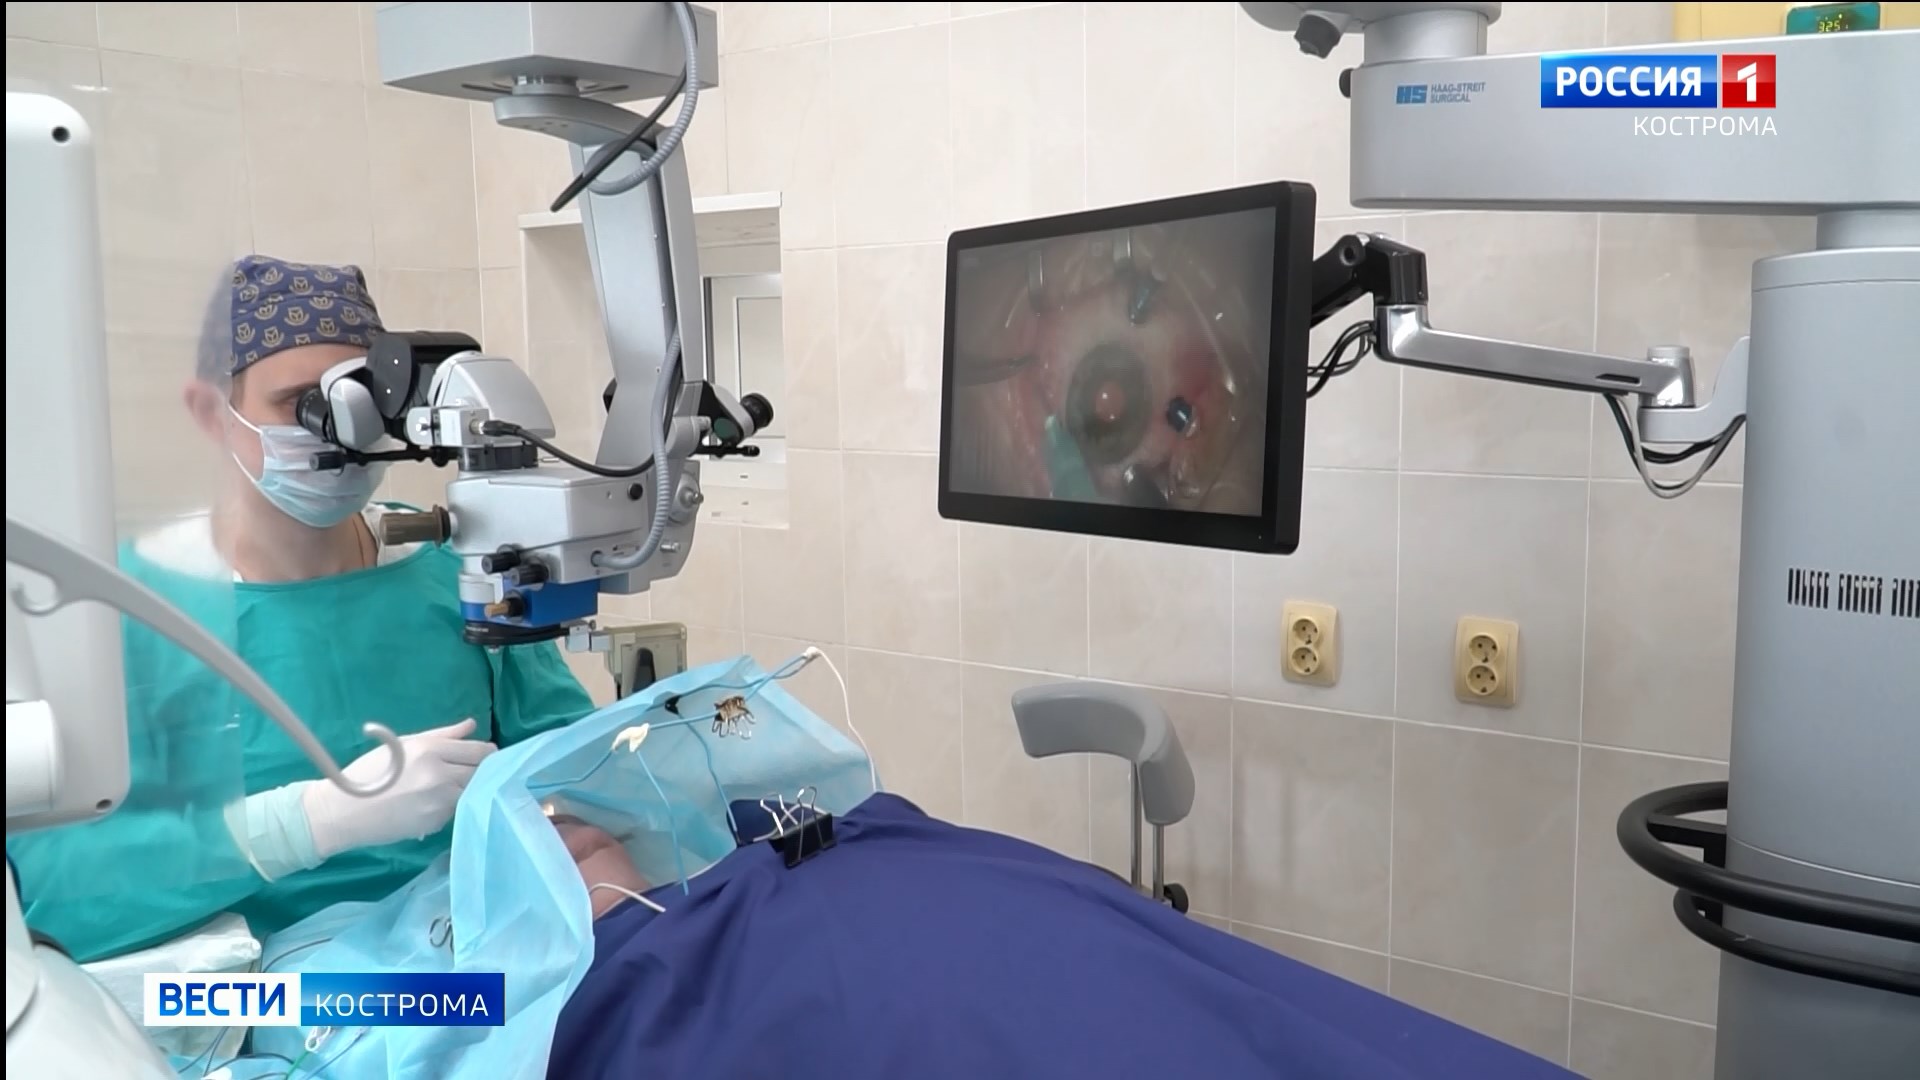 Офтальмологи Костромской областной клинической больницы освоили имплантацию искусственной радужки